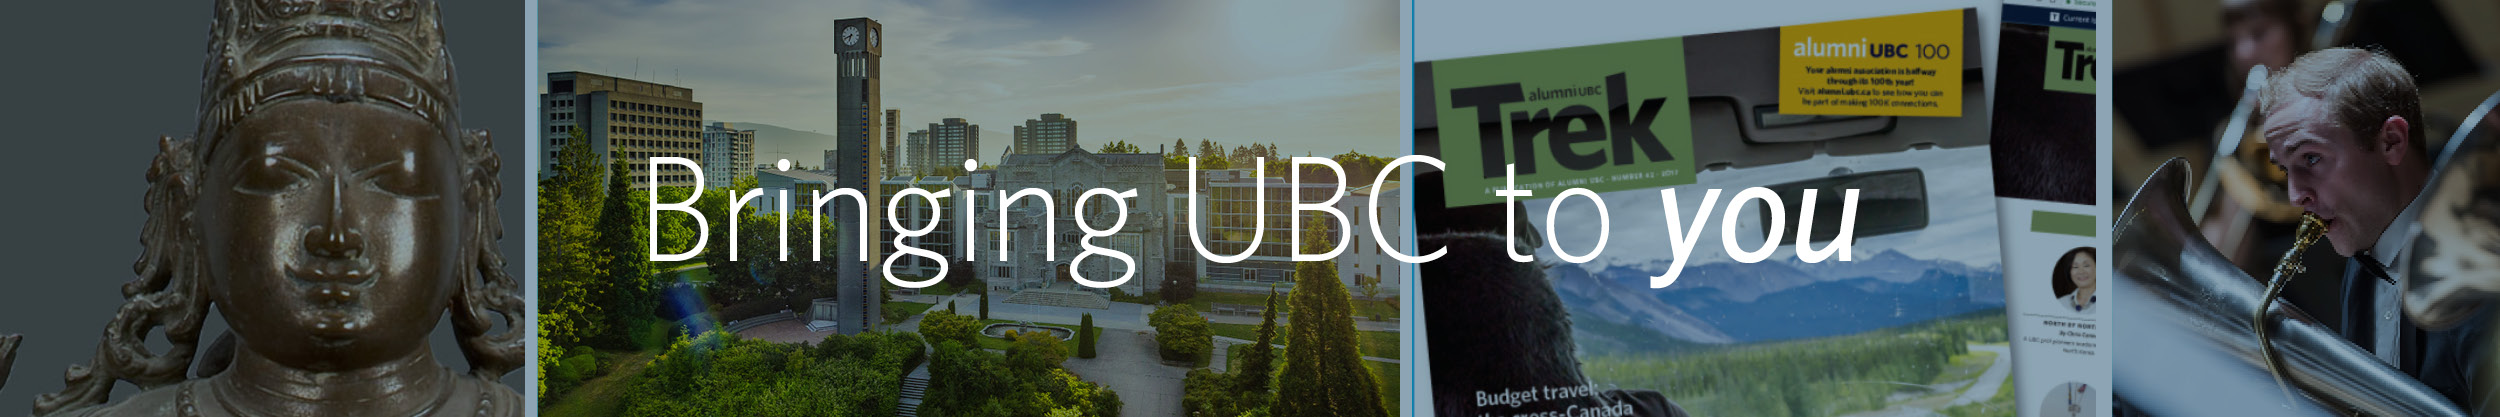 Bringing UBC to you